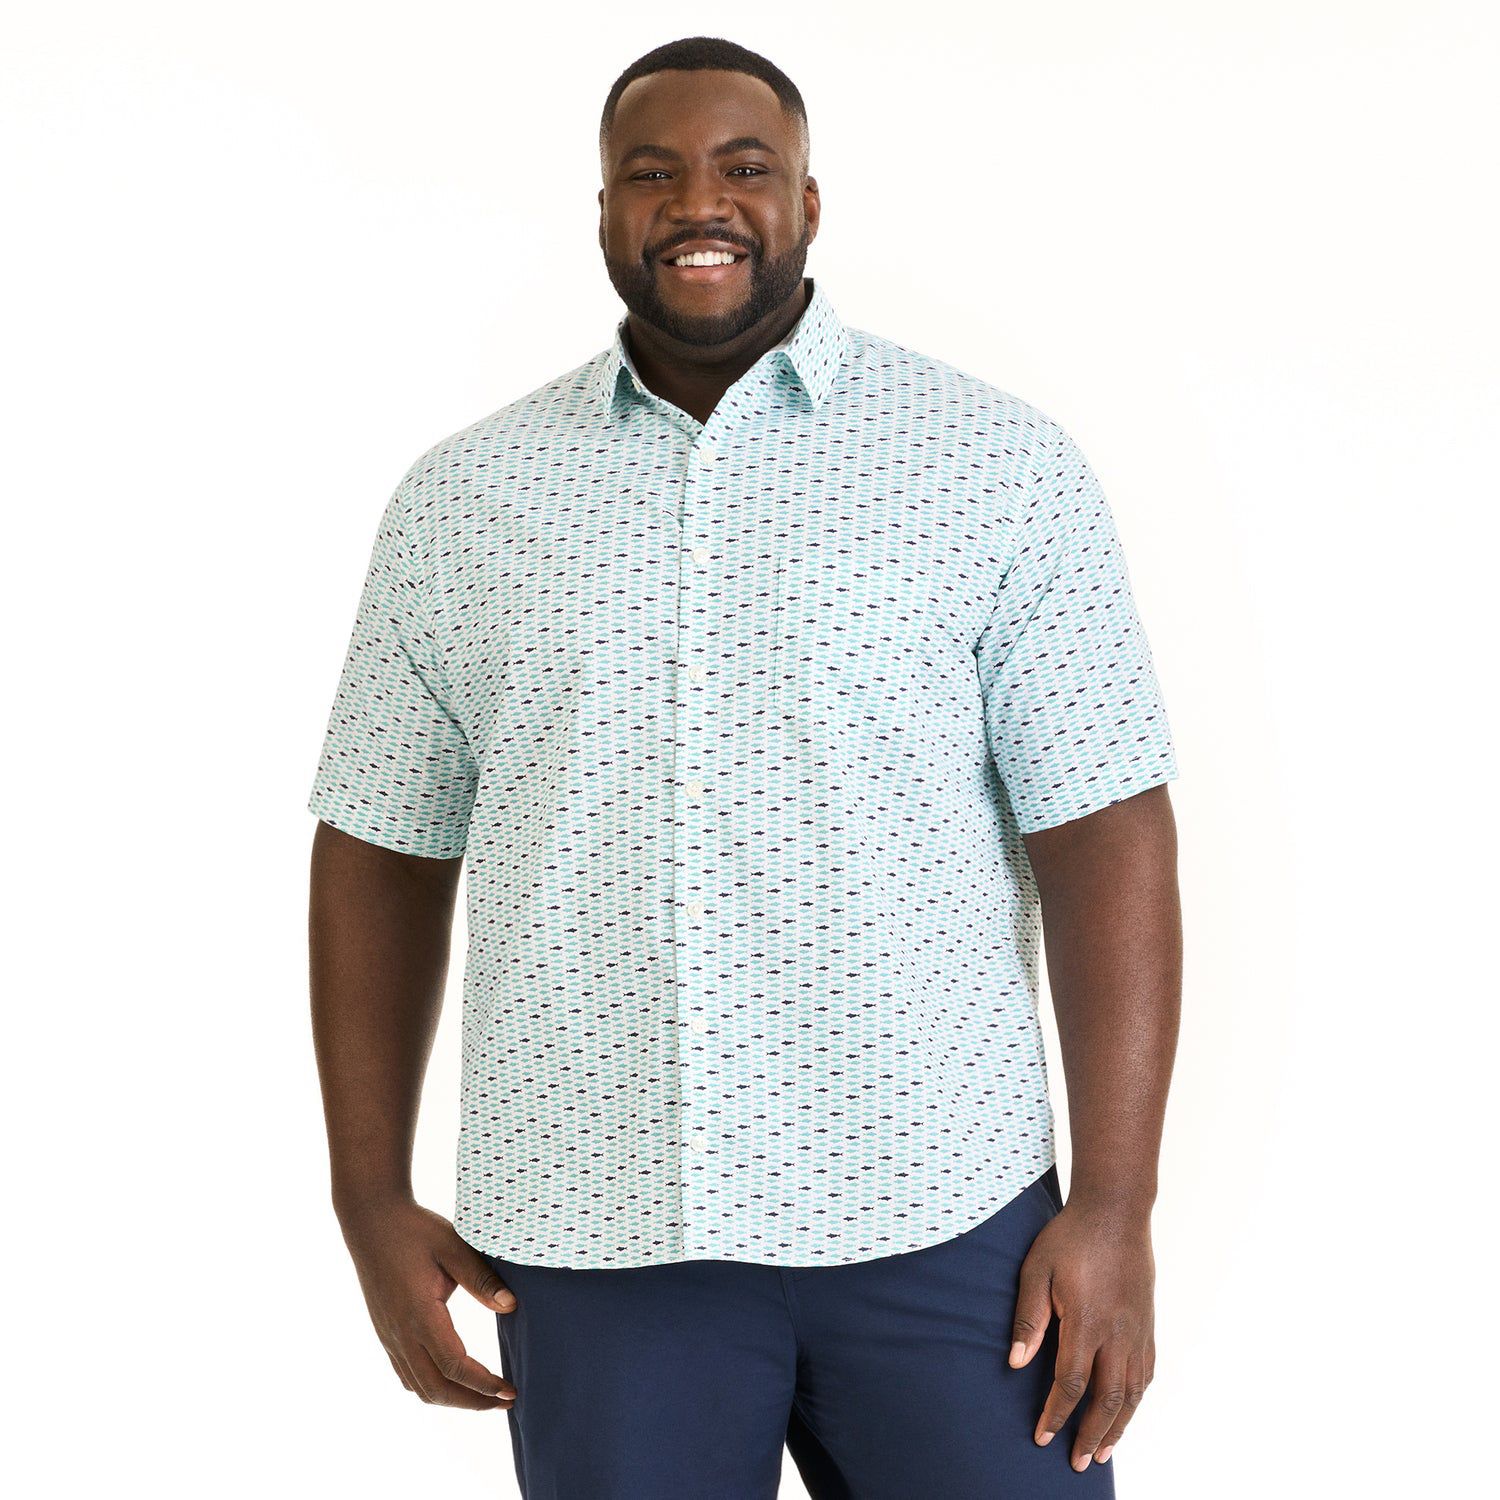 Van Heusen Shark Ocean Print Short Sleeve Button Up Collared Shirt XL Slim Fit